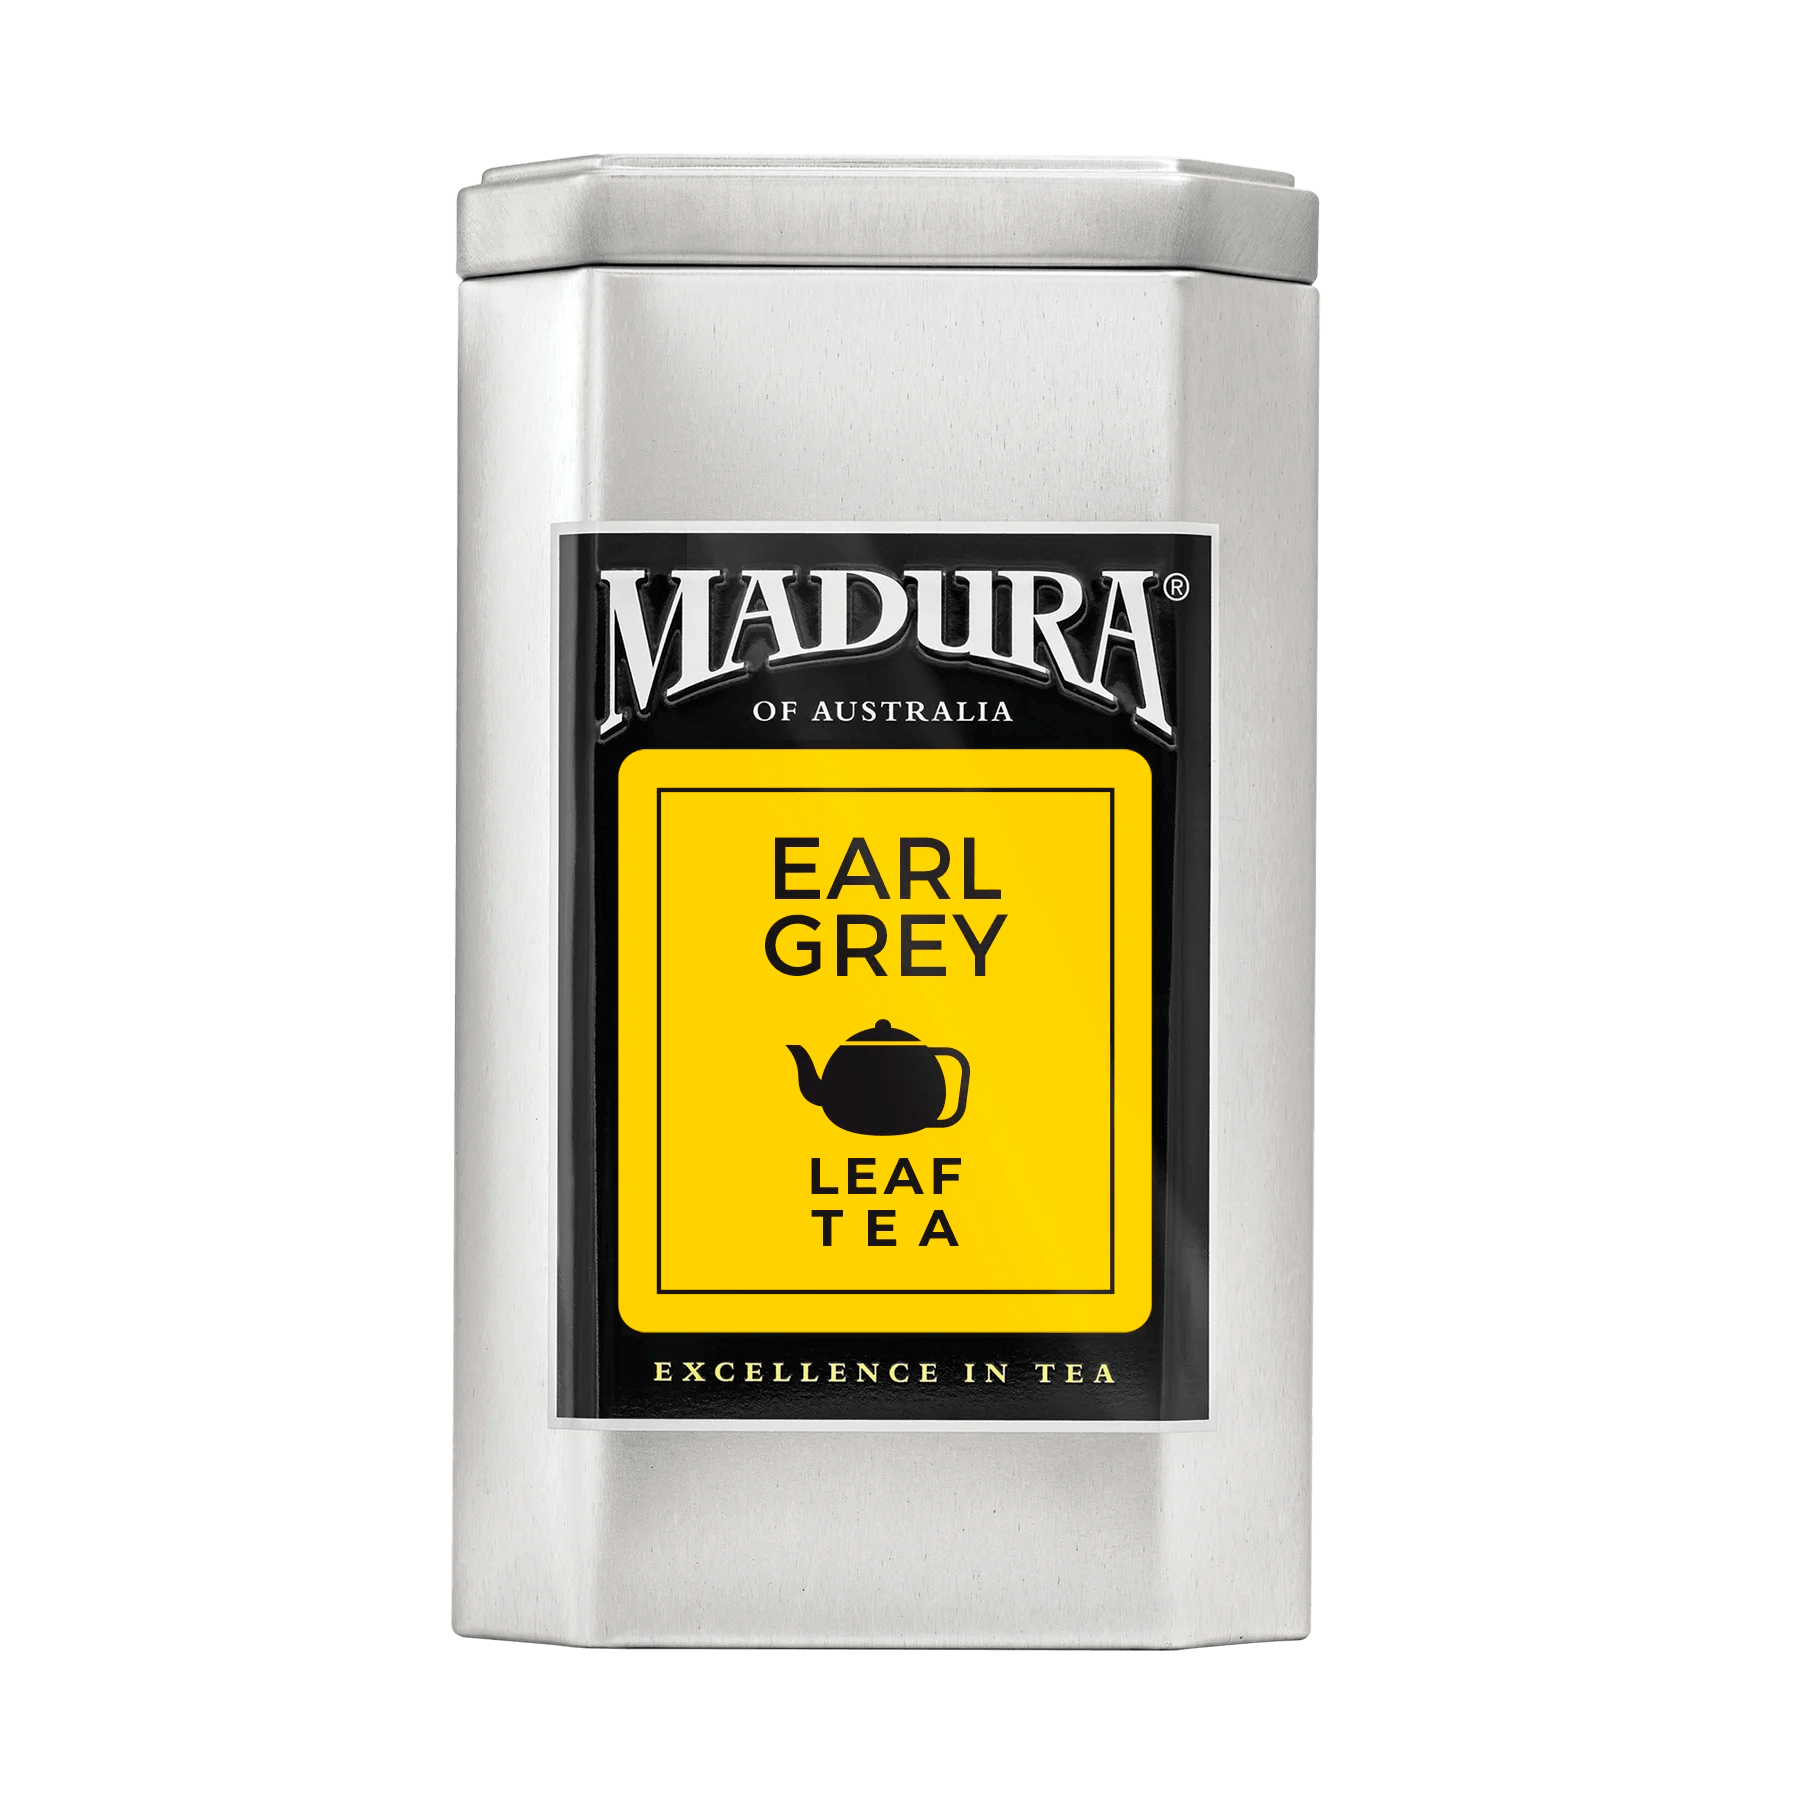 Empty Caddy with Earl Grey Leaf Tea Label - Madura Tea